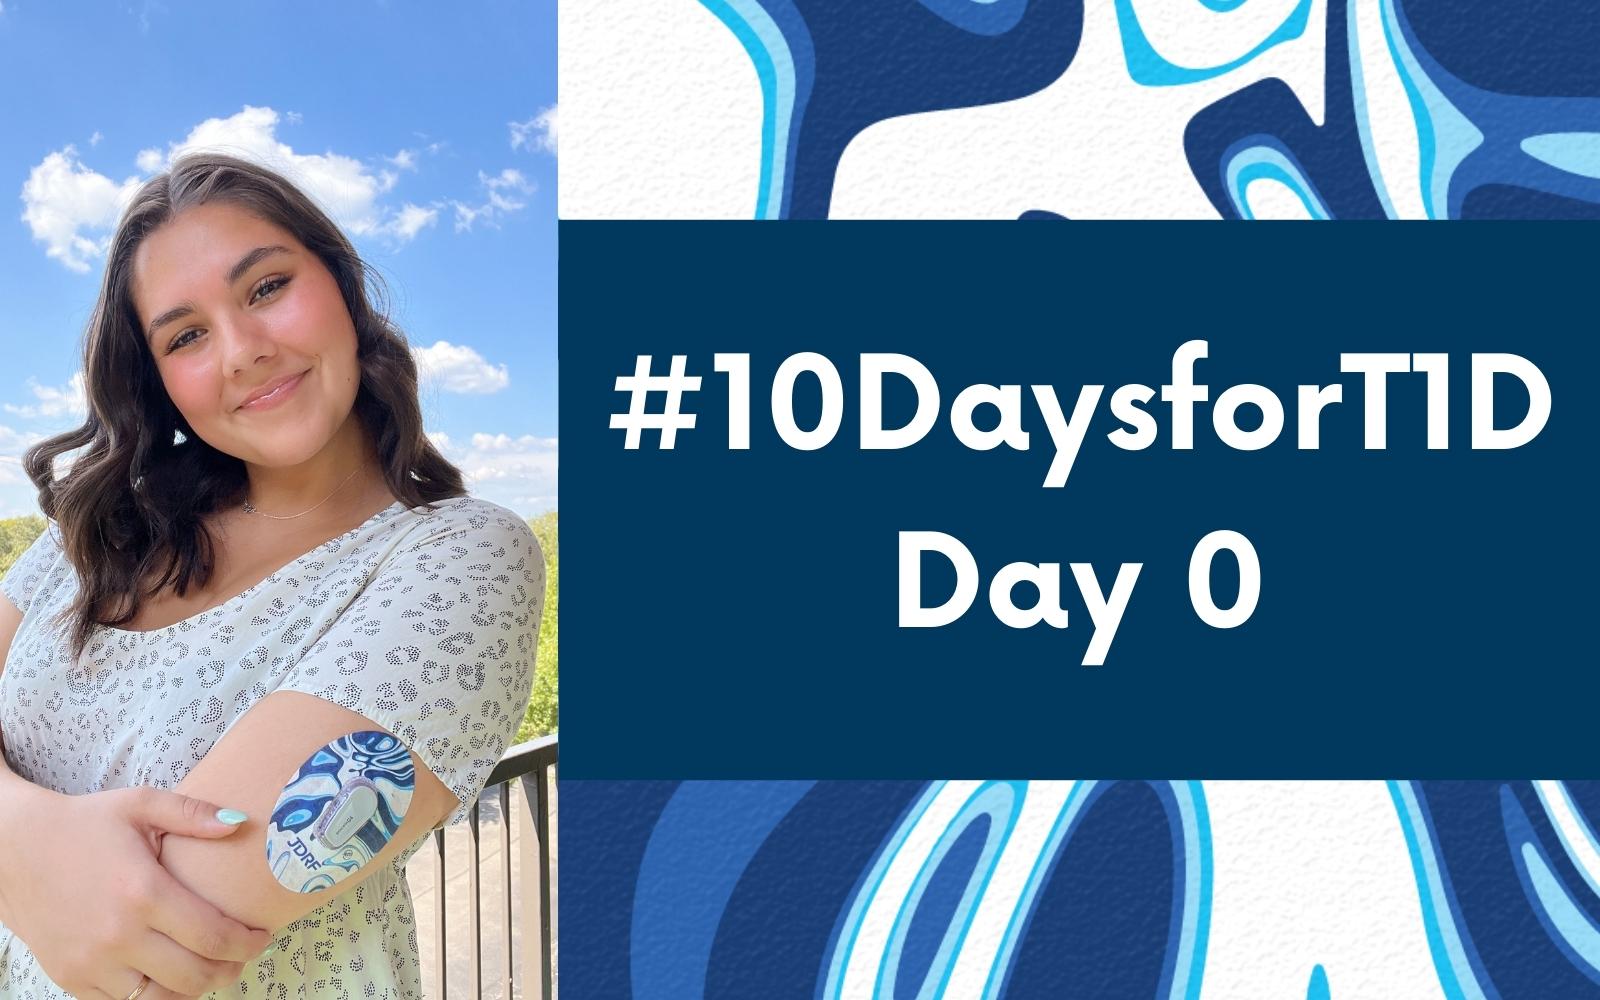 #10DaysforT1D Challenge Day 0